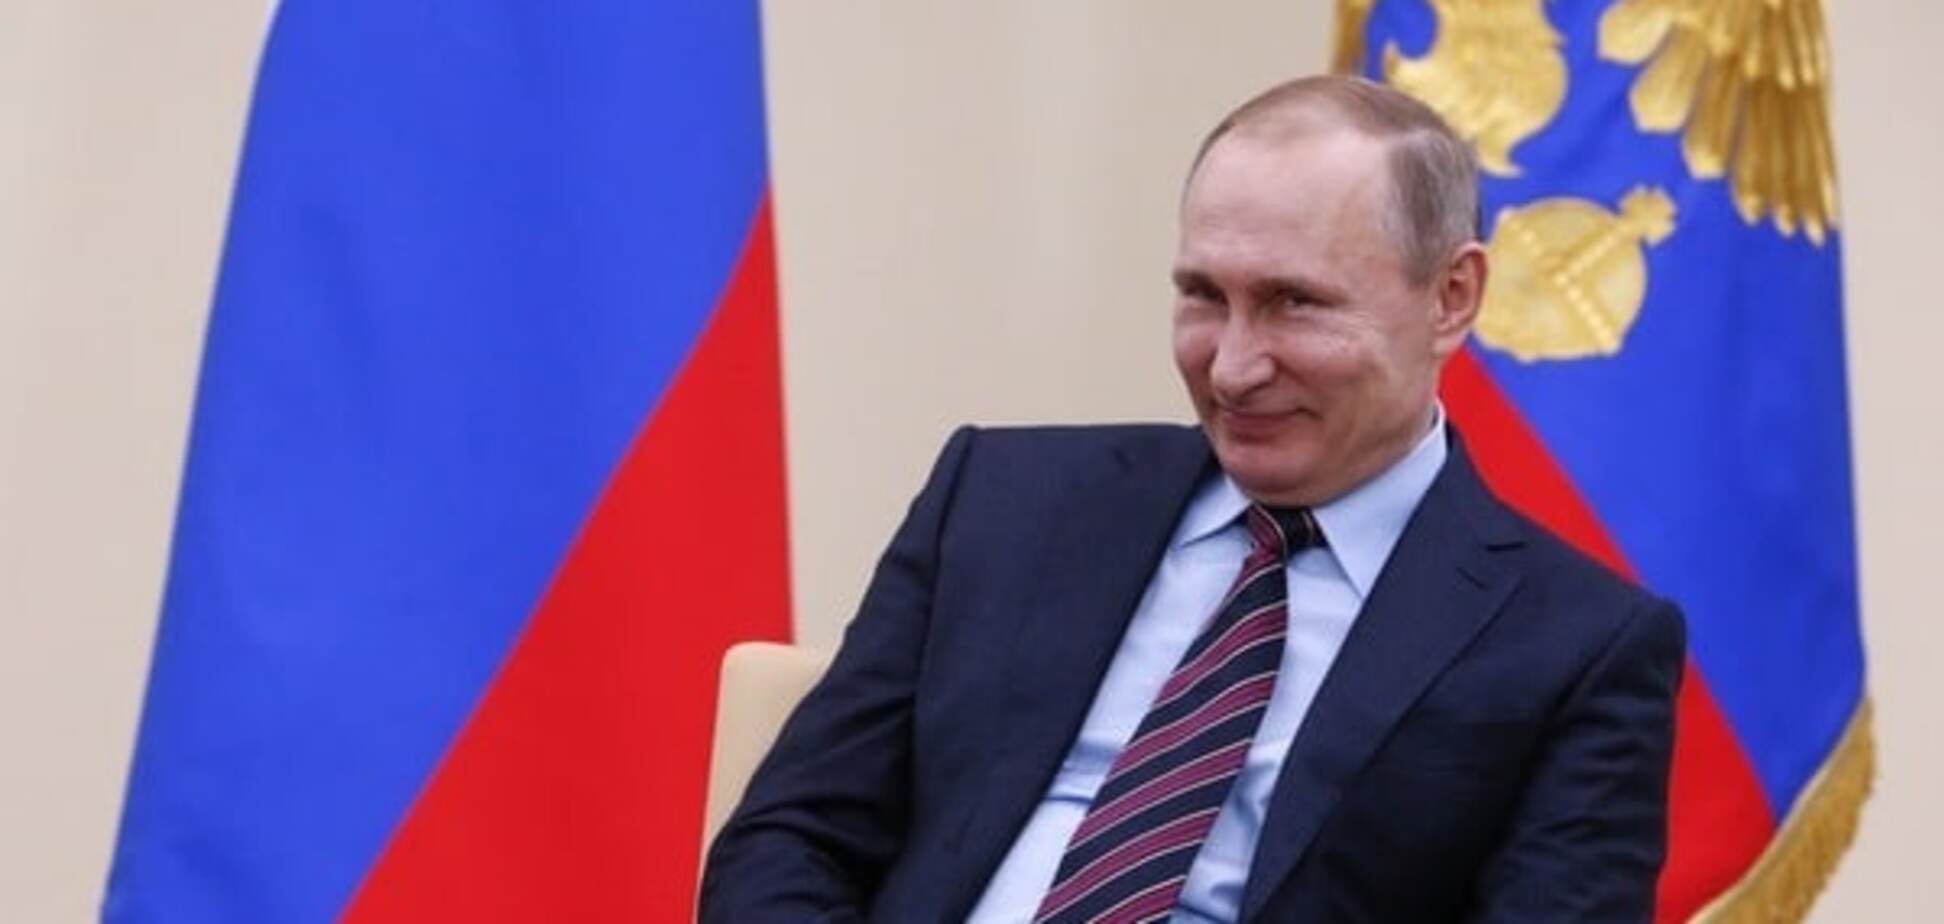 Гнилой зуб: Радзиховский объяснил, почему Путин не 'сольет' Донбасс